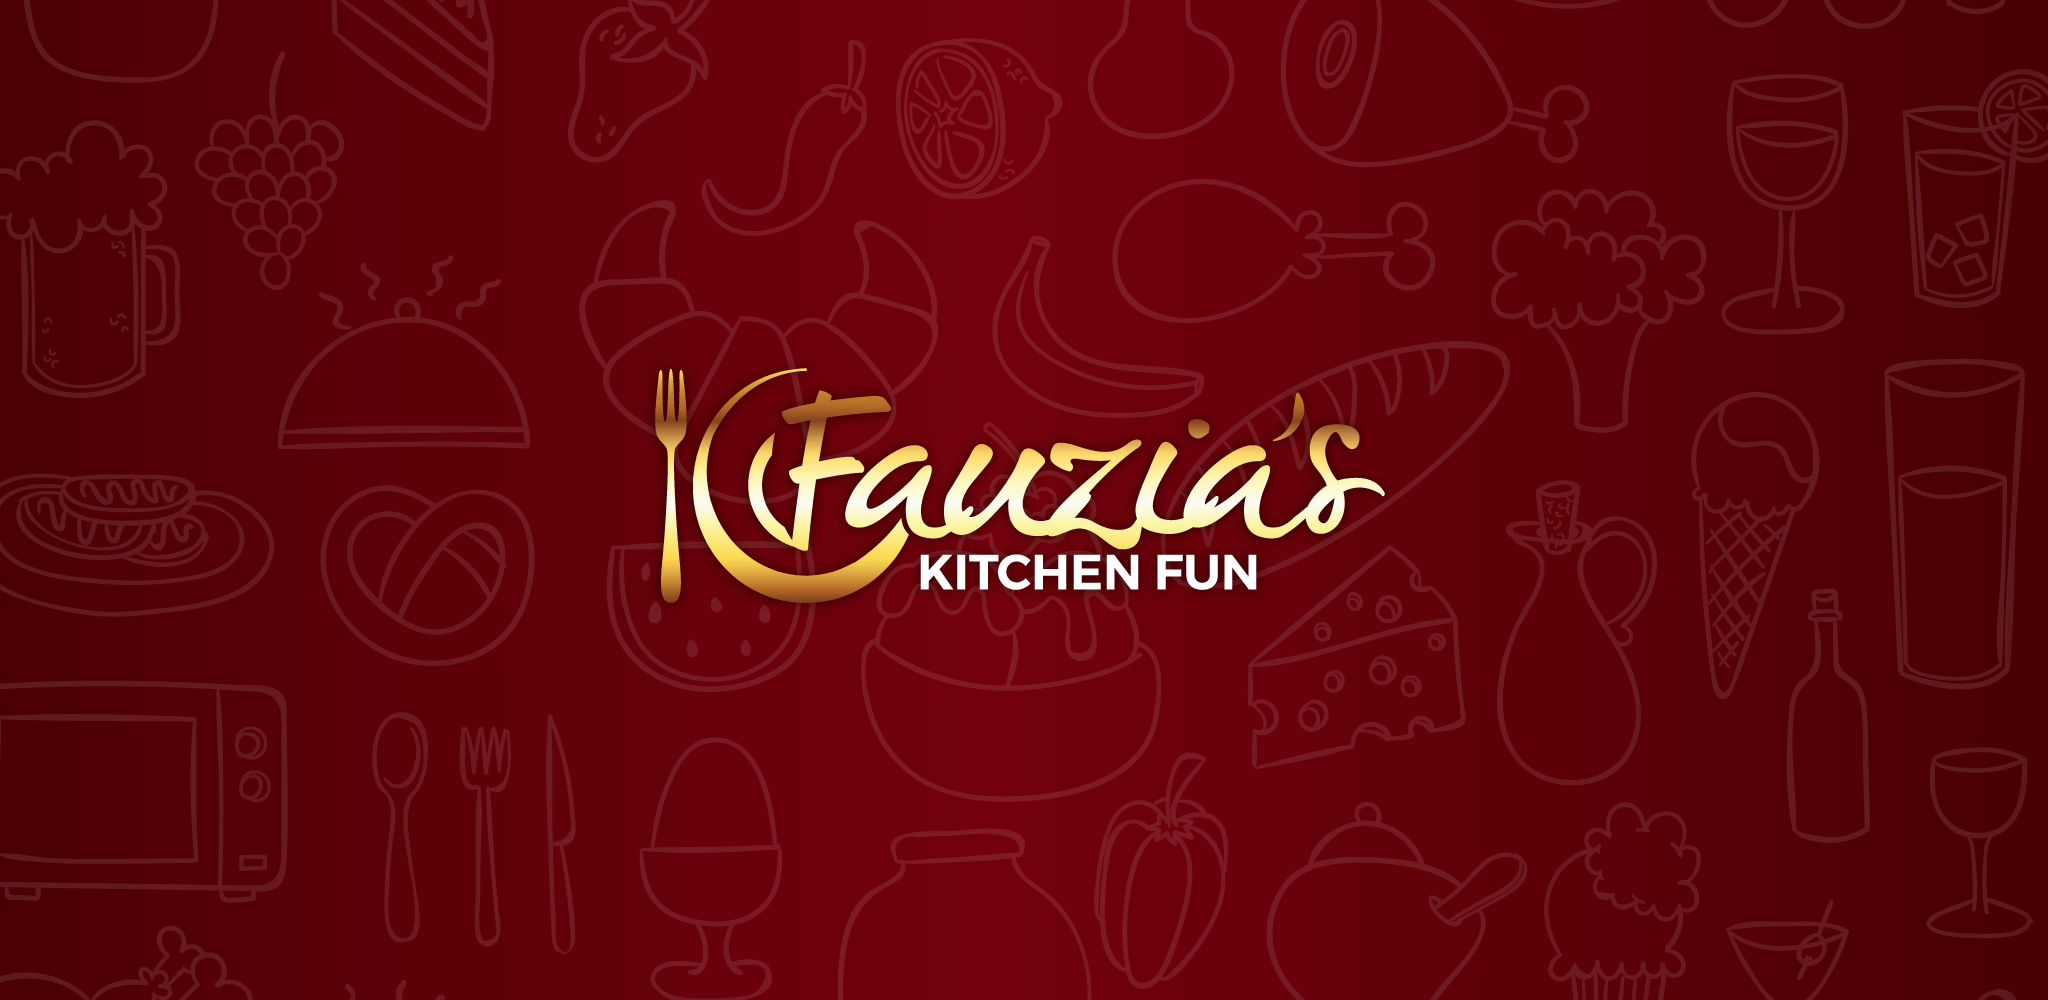 Home Fauzia S Kitchen Fun